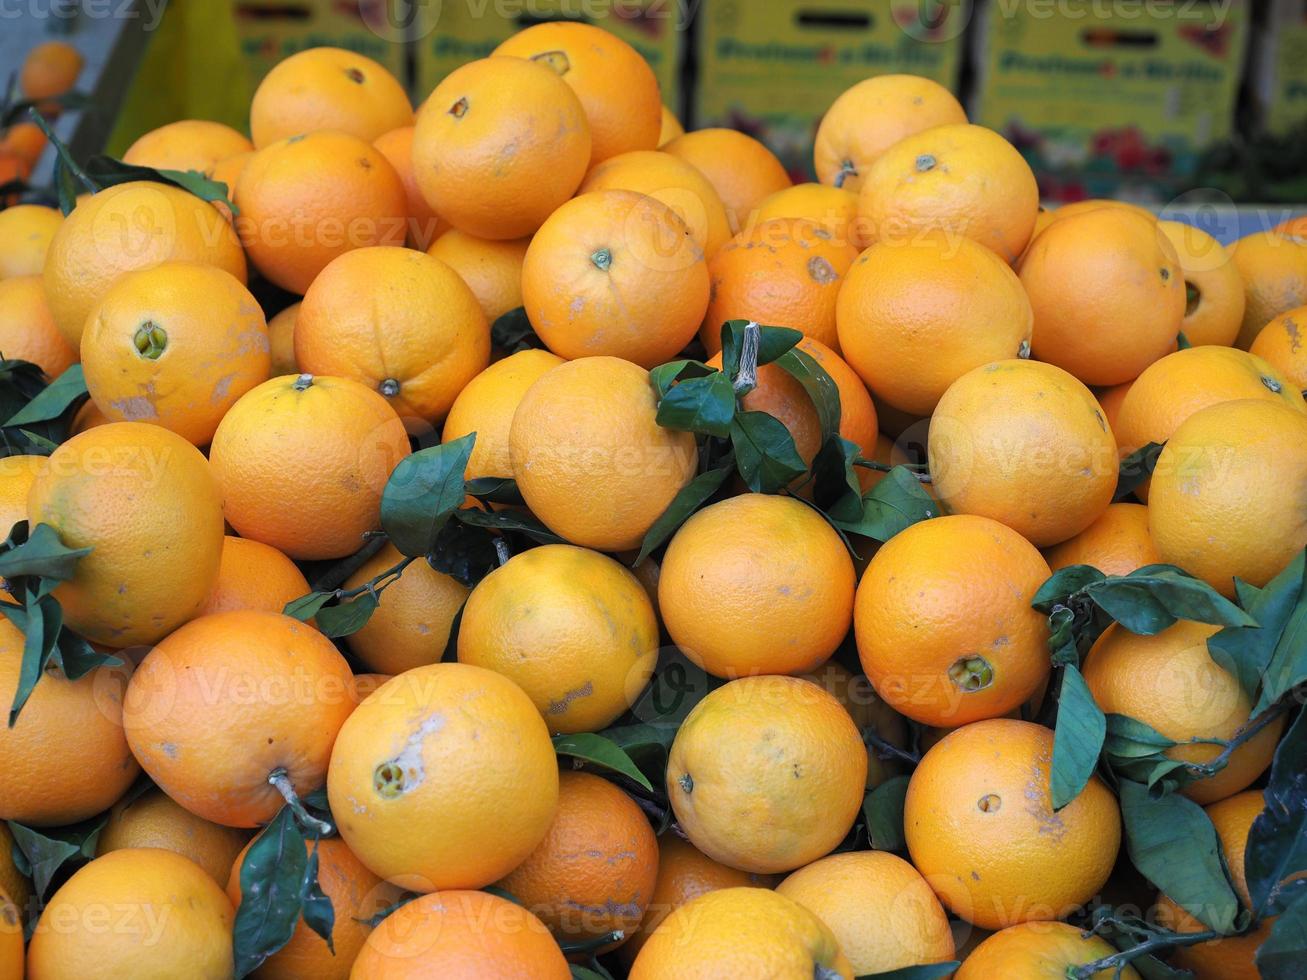 oranges au marché photo